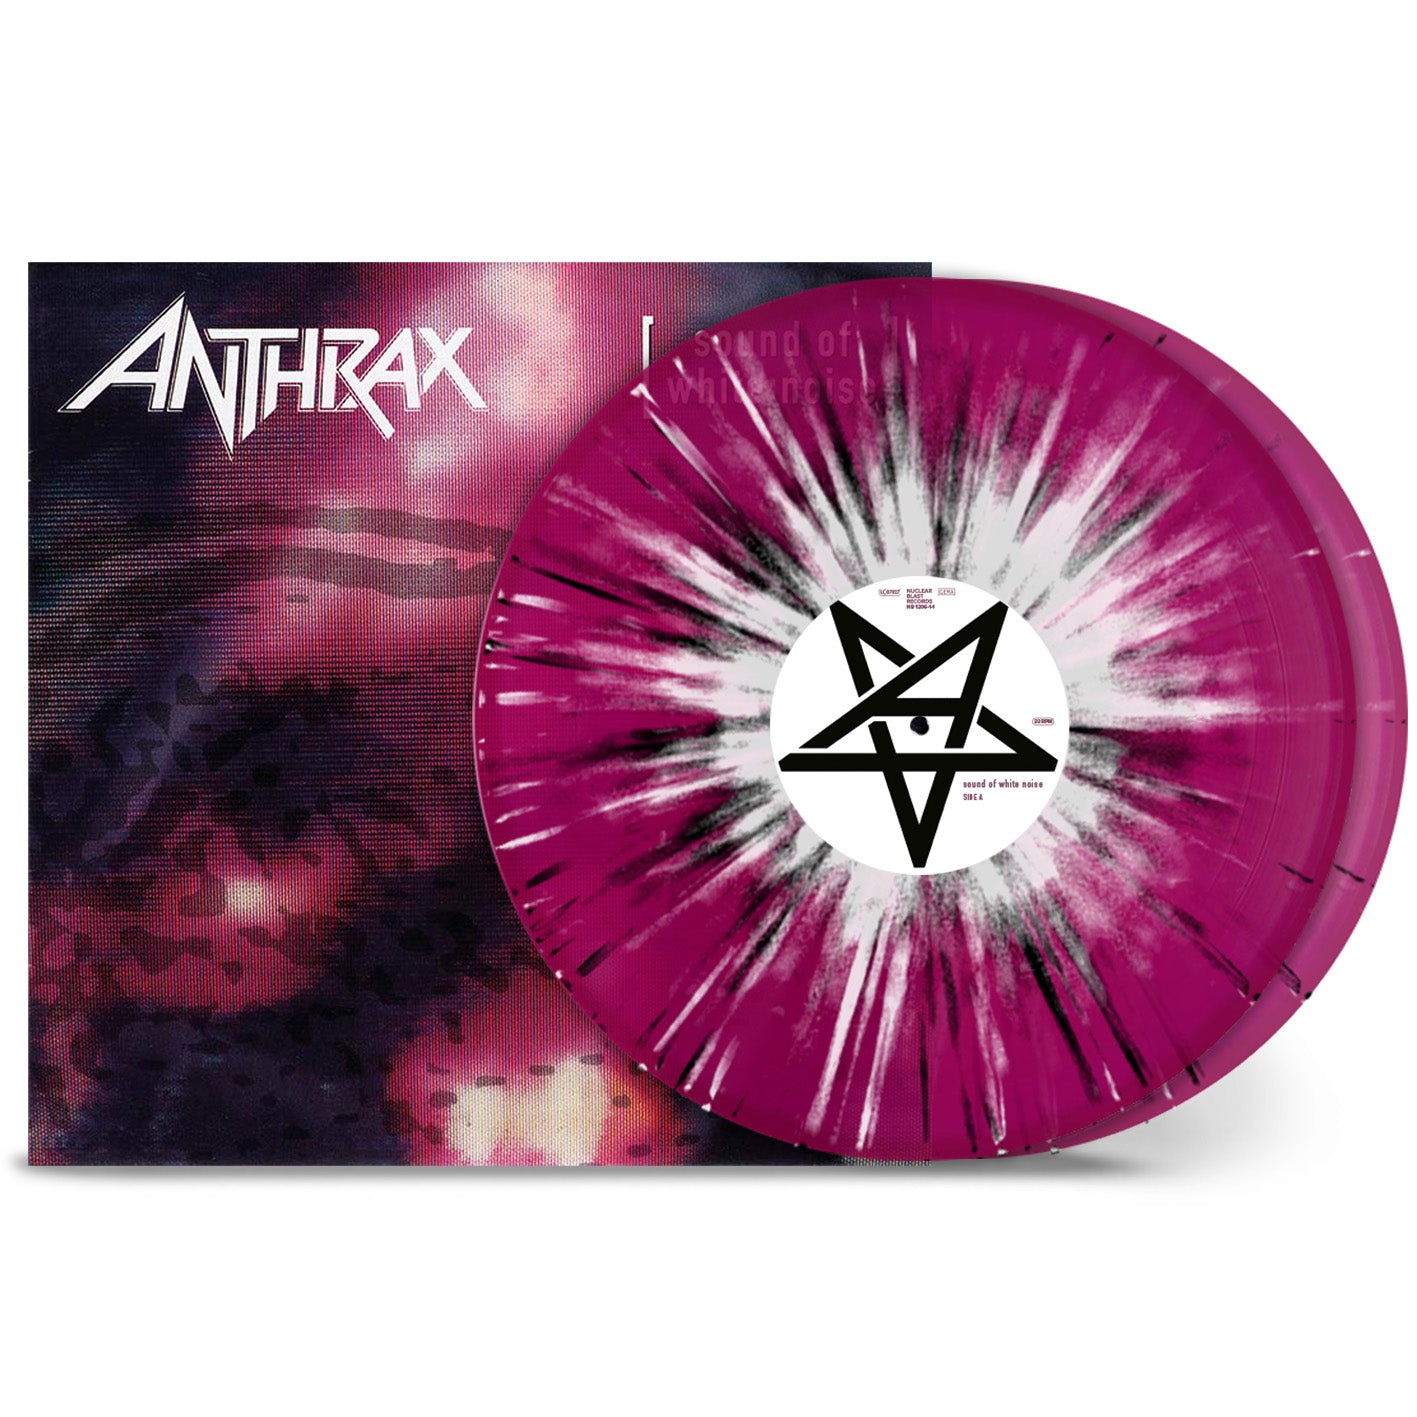 Anthrax "Sound Of White Noise" 2x12" Violet White Black Splatter Vinyl - NEW